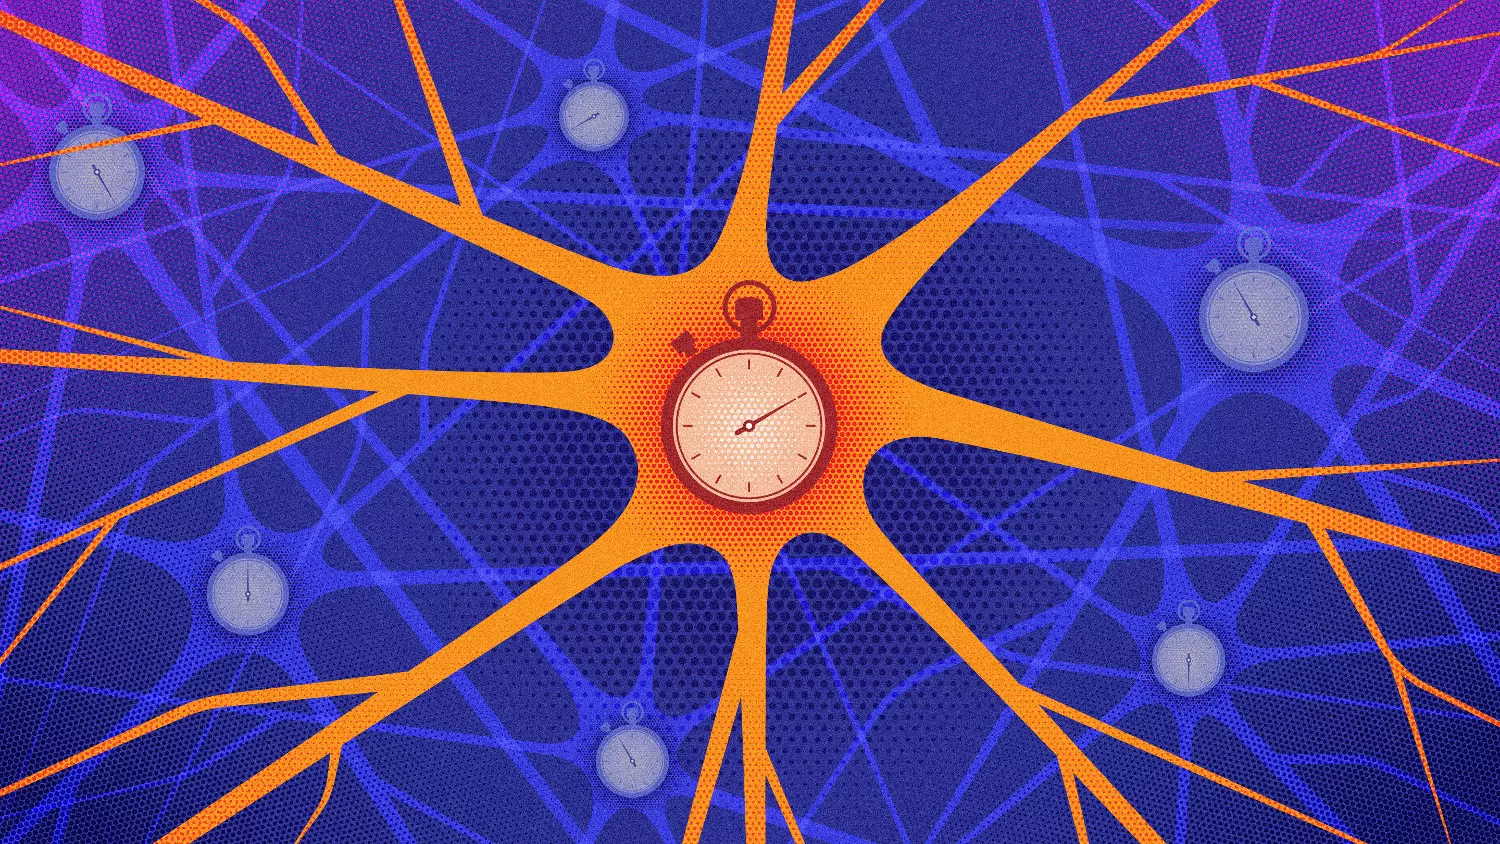 Az idegsejtek aktivitásuk időzítésével is kódolják az információkat